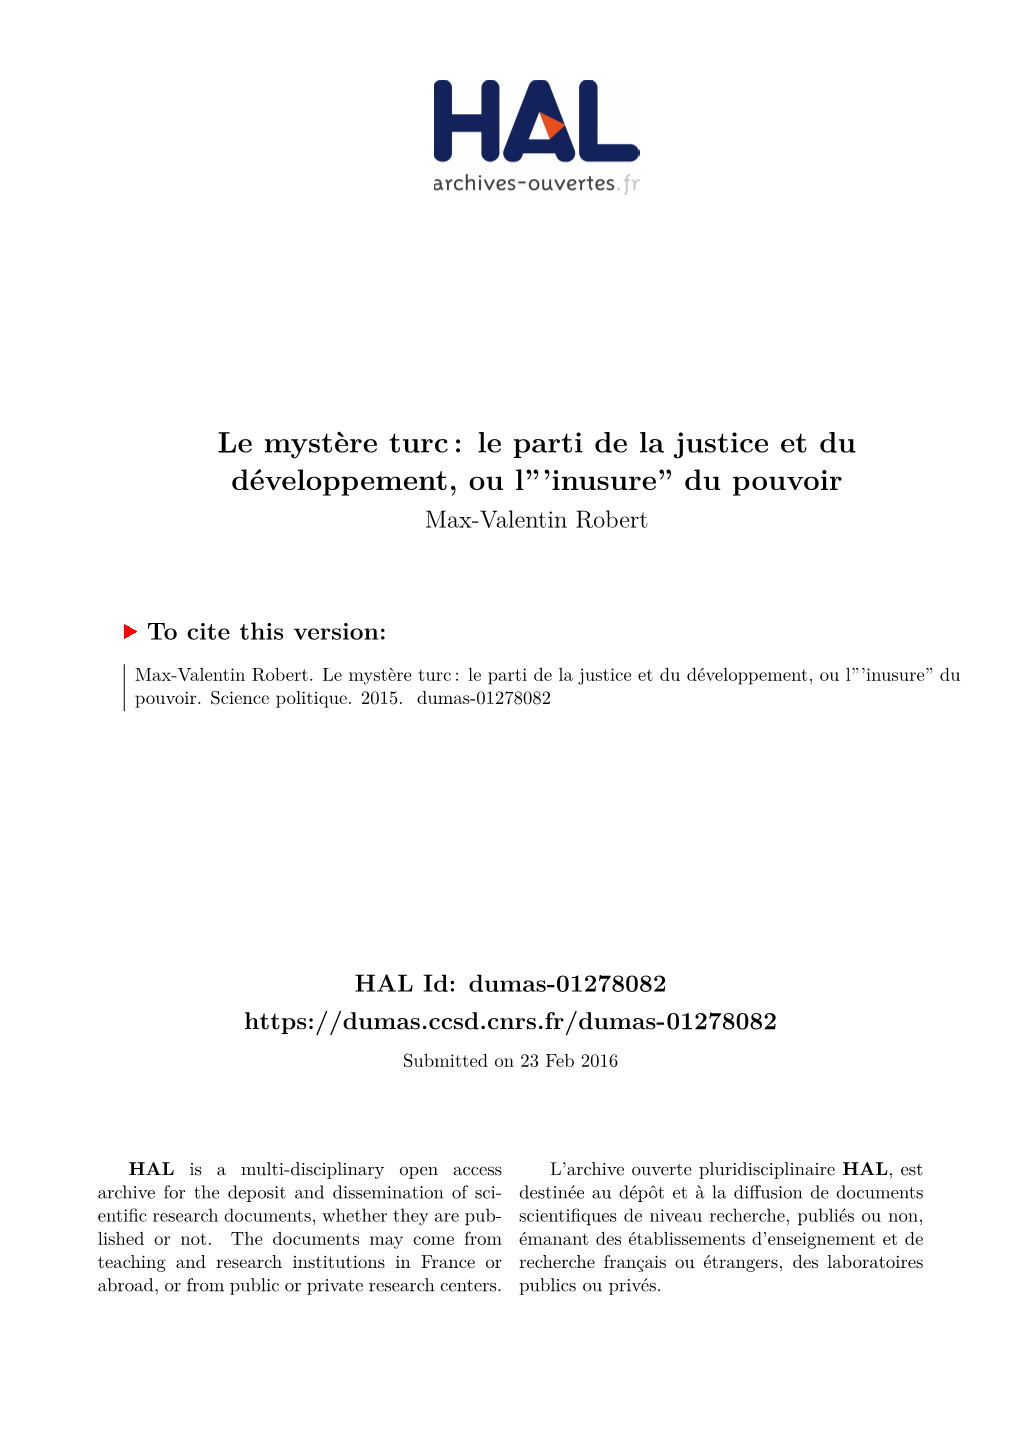 Le Parti De La Justice Et Du Développement, Ou L”’Inusure” Du Pouvoir Max-Valentin Robert